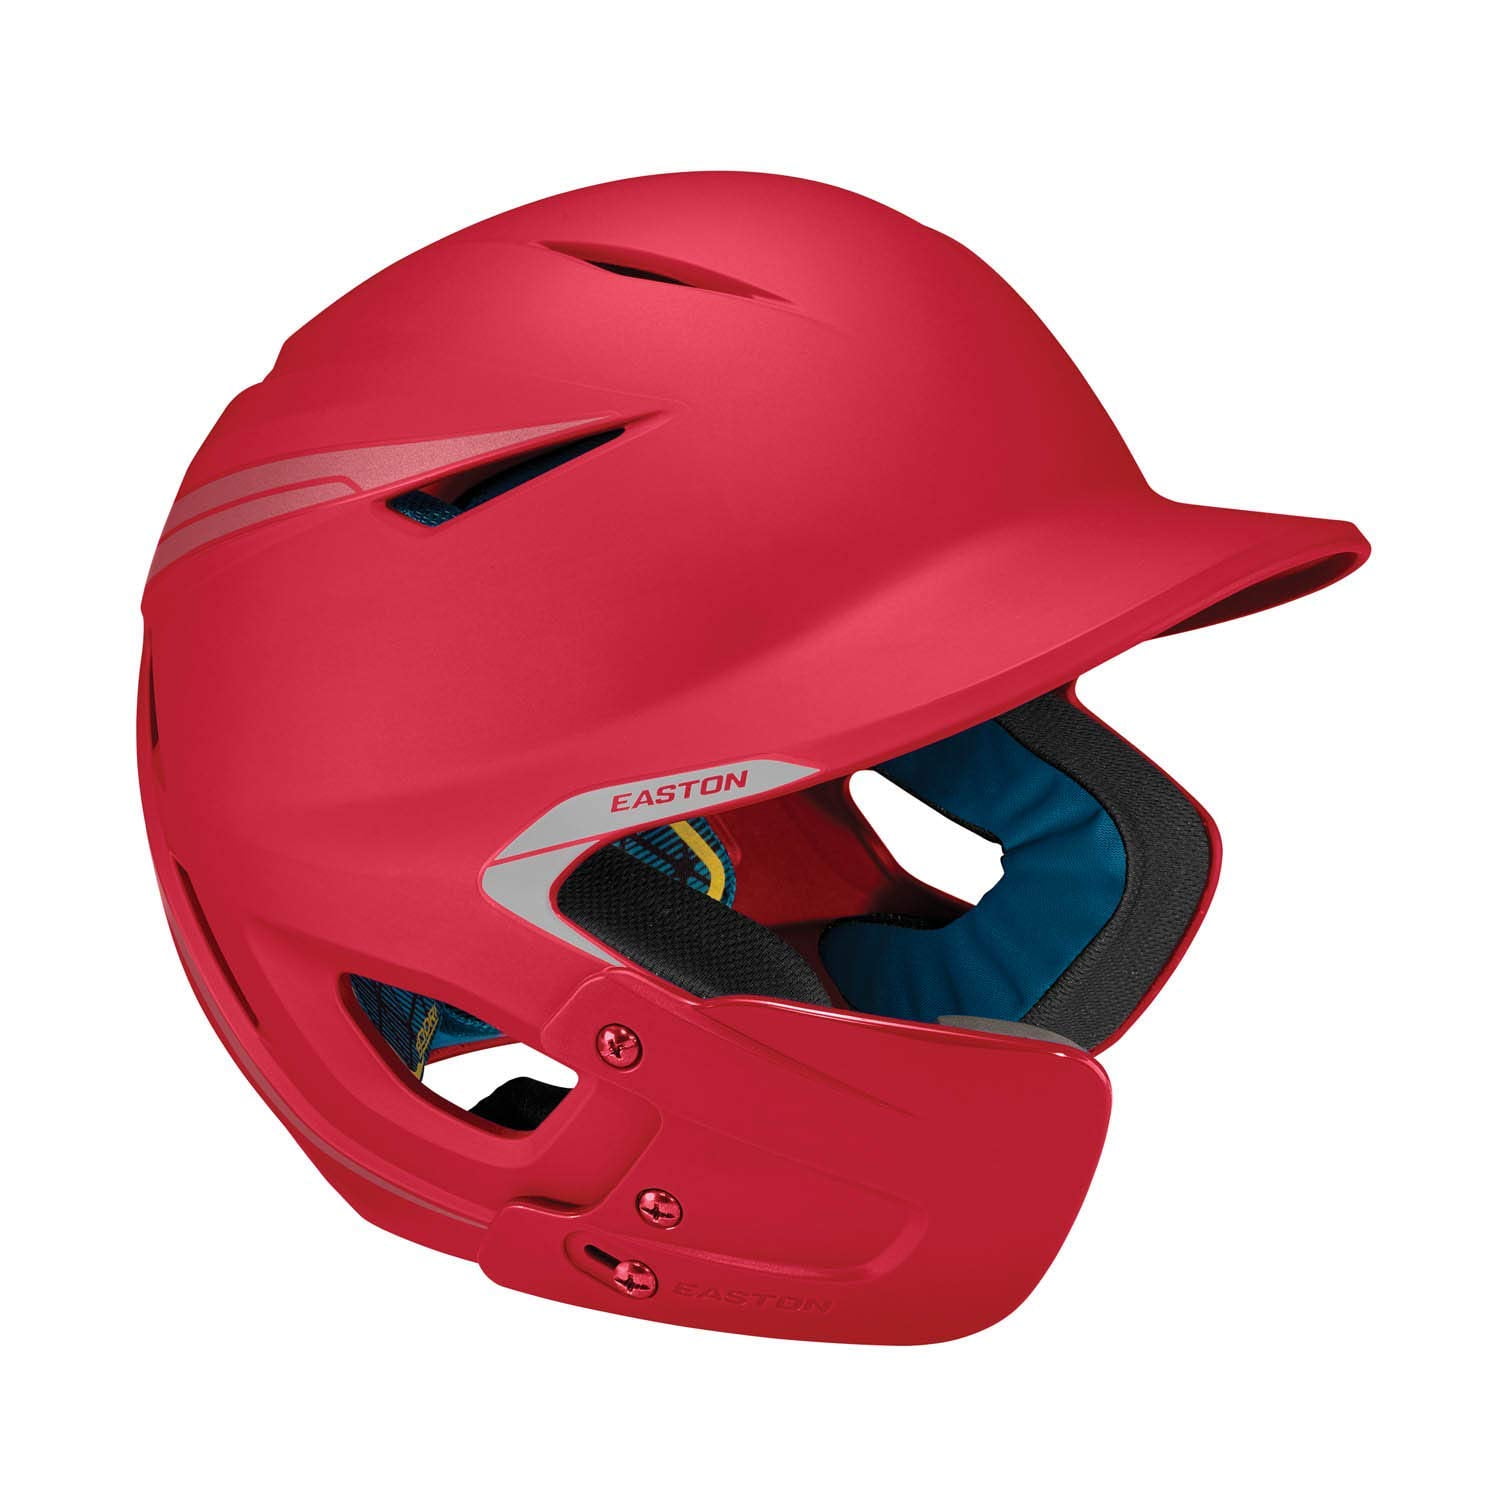 EASTON Natural Softball Baseball Batting Helmet Red Sr 